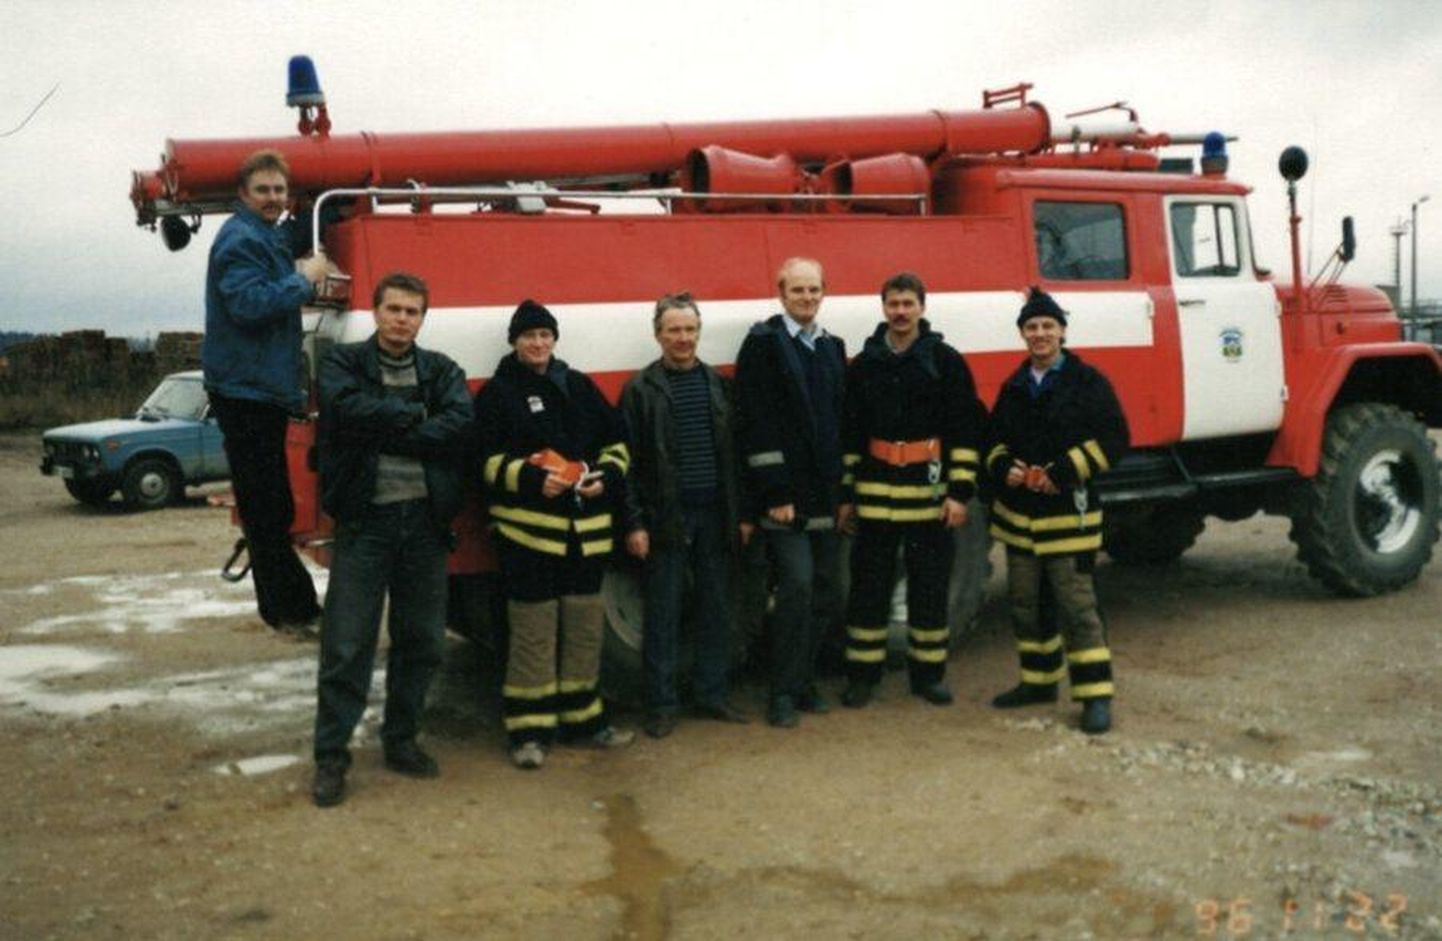 Aravete päästekomando 25 aastat tagasi. Fotol on päästja Arvi Luuk (vasakult), Albu valla piirkonnainspektor Urmas Külv, päästja Ago Pukspuu, päästja Arvo Tipp, komandopealik Priit Grünthal, päästja Meelis Tamlak ja päästja Veljo Kukk. Pildilt on puudu päästja Riho Sepp.